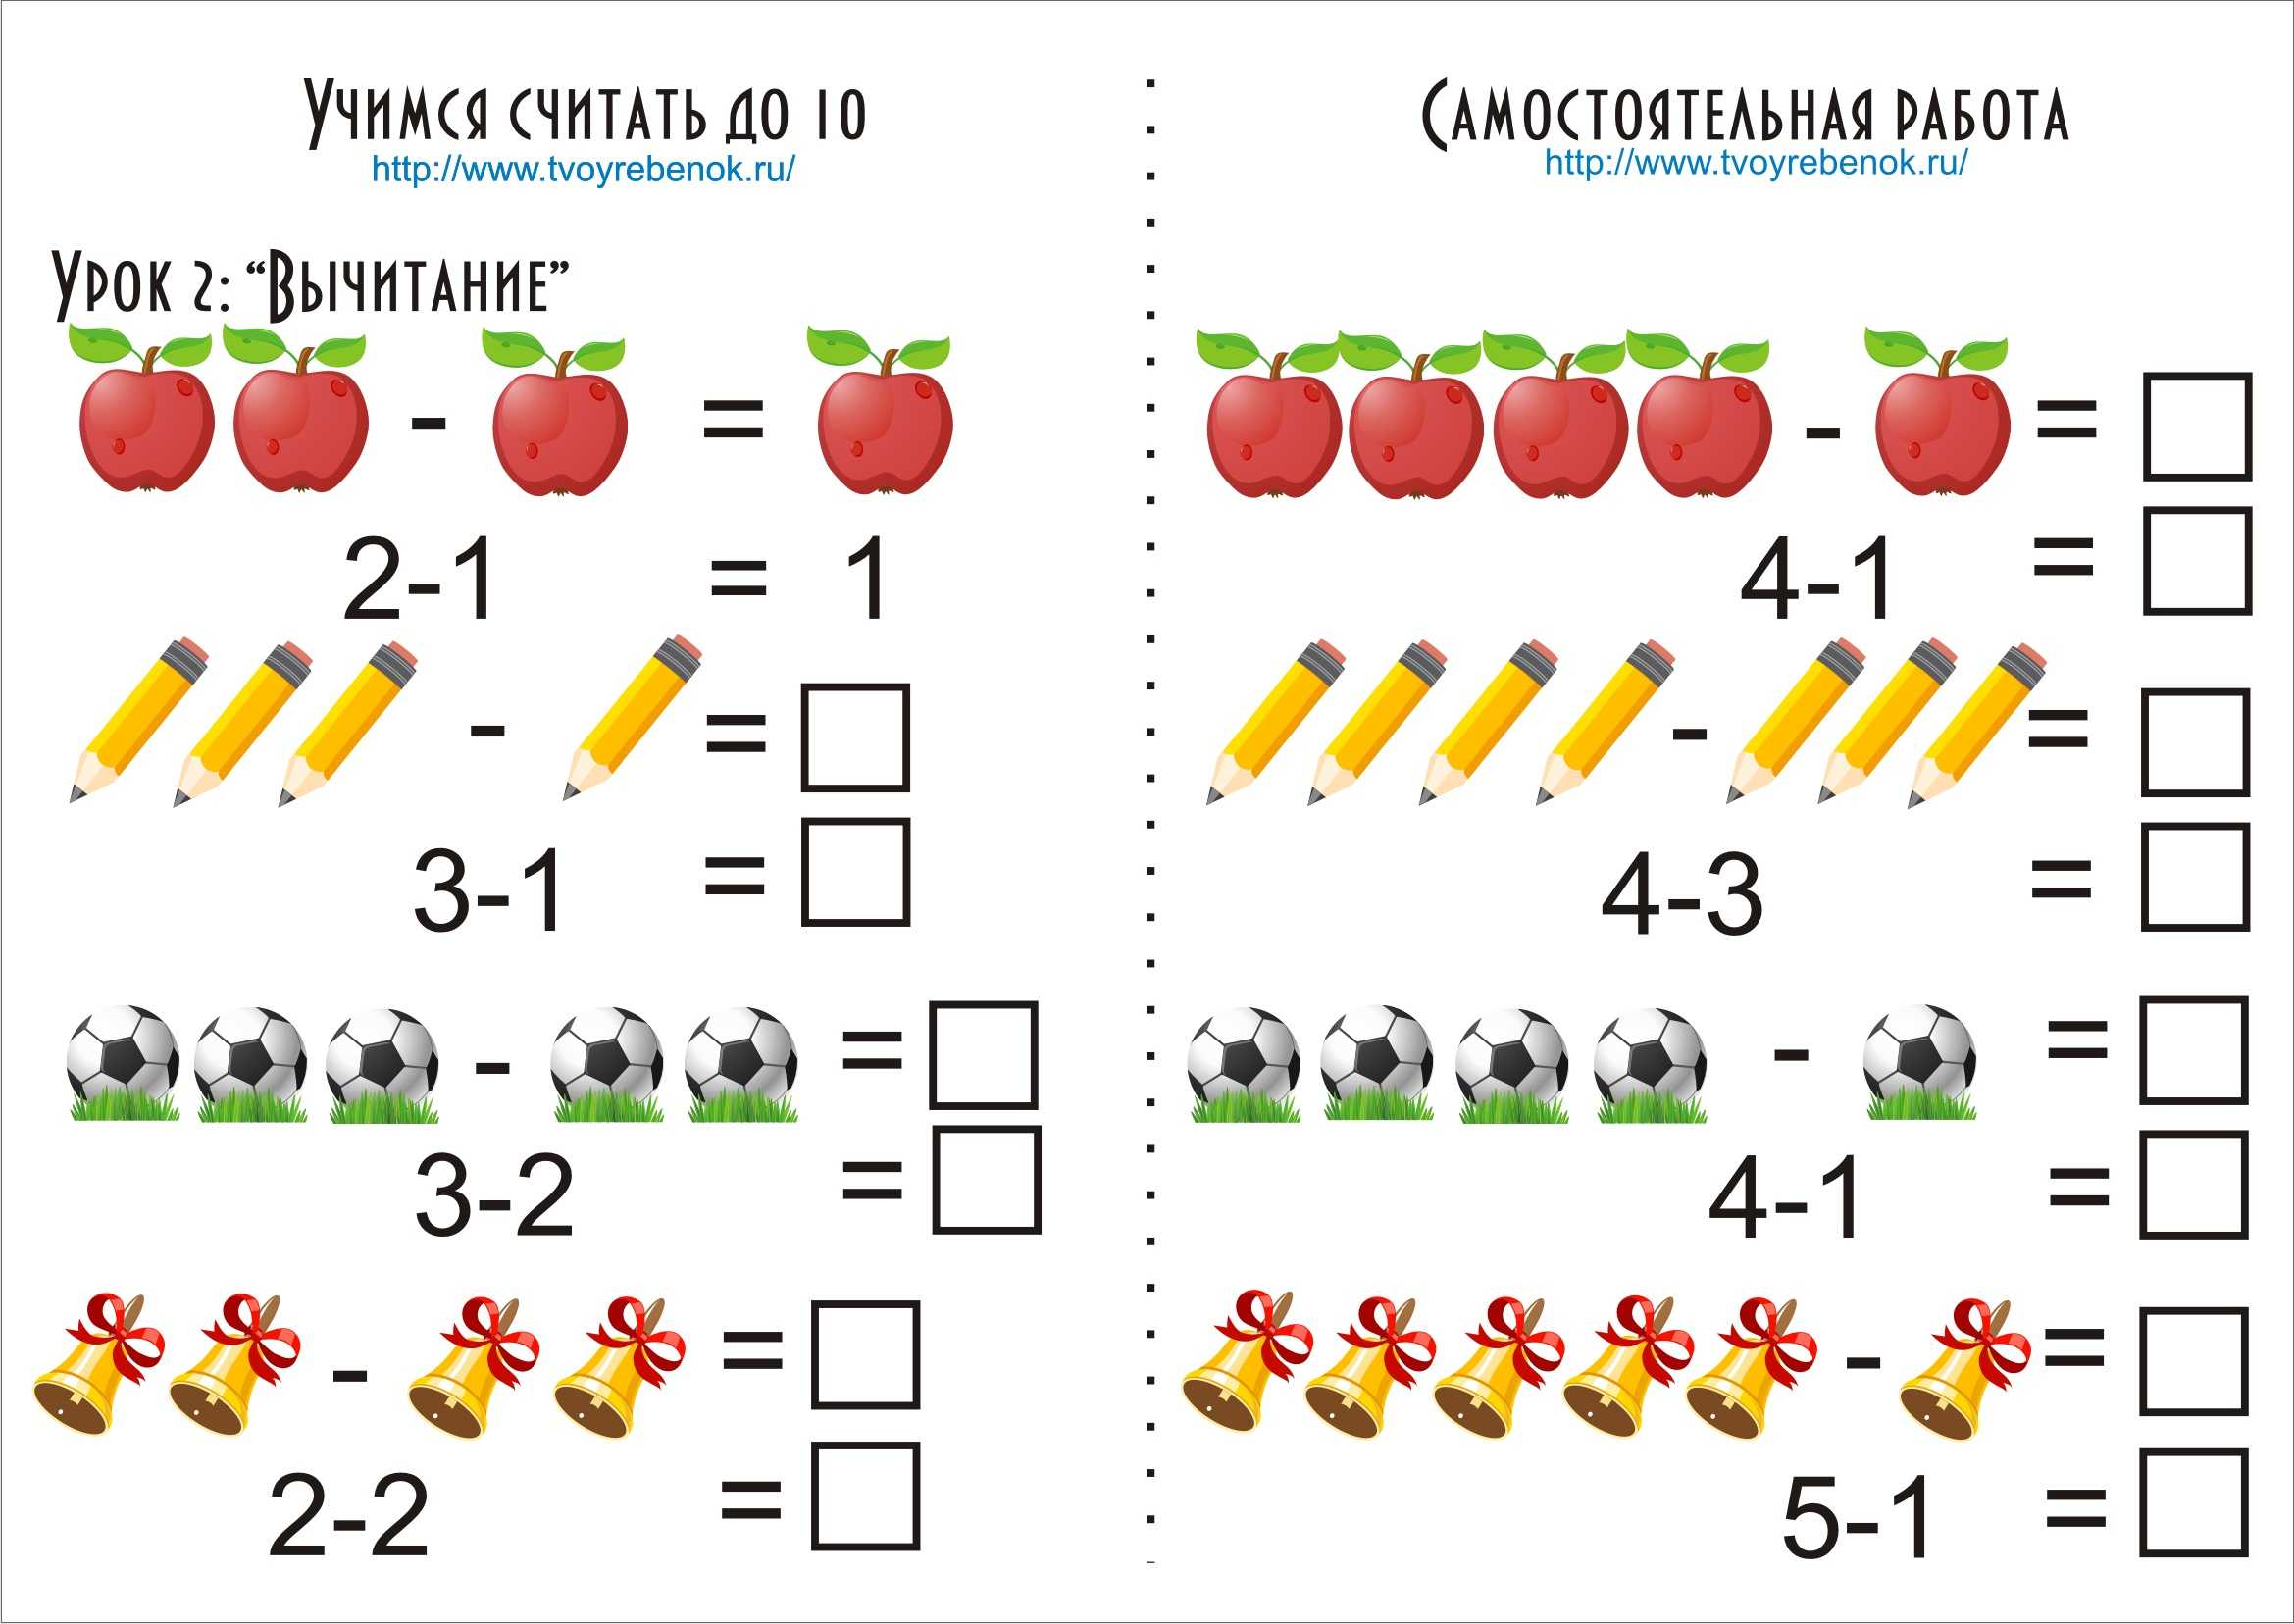 Как научить ребенка считать до 10, 20, 100 - методики обучения детей цифрам и счёту